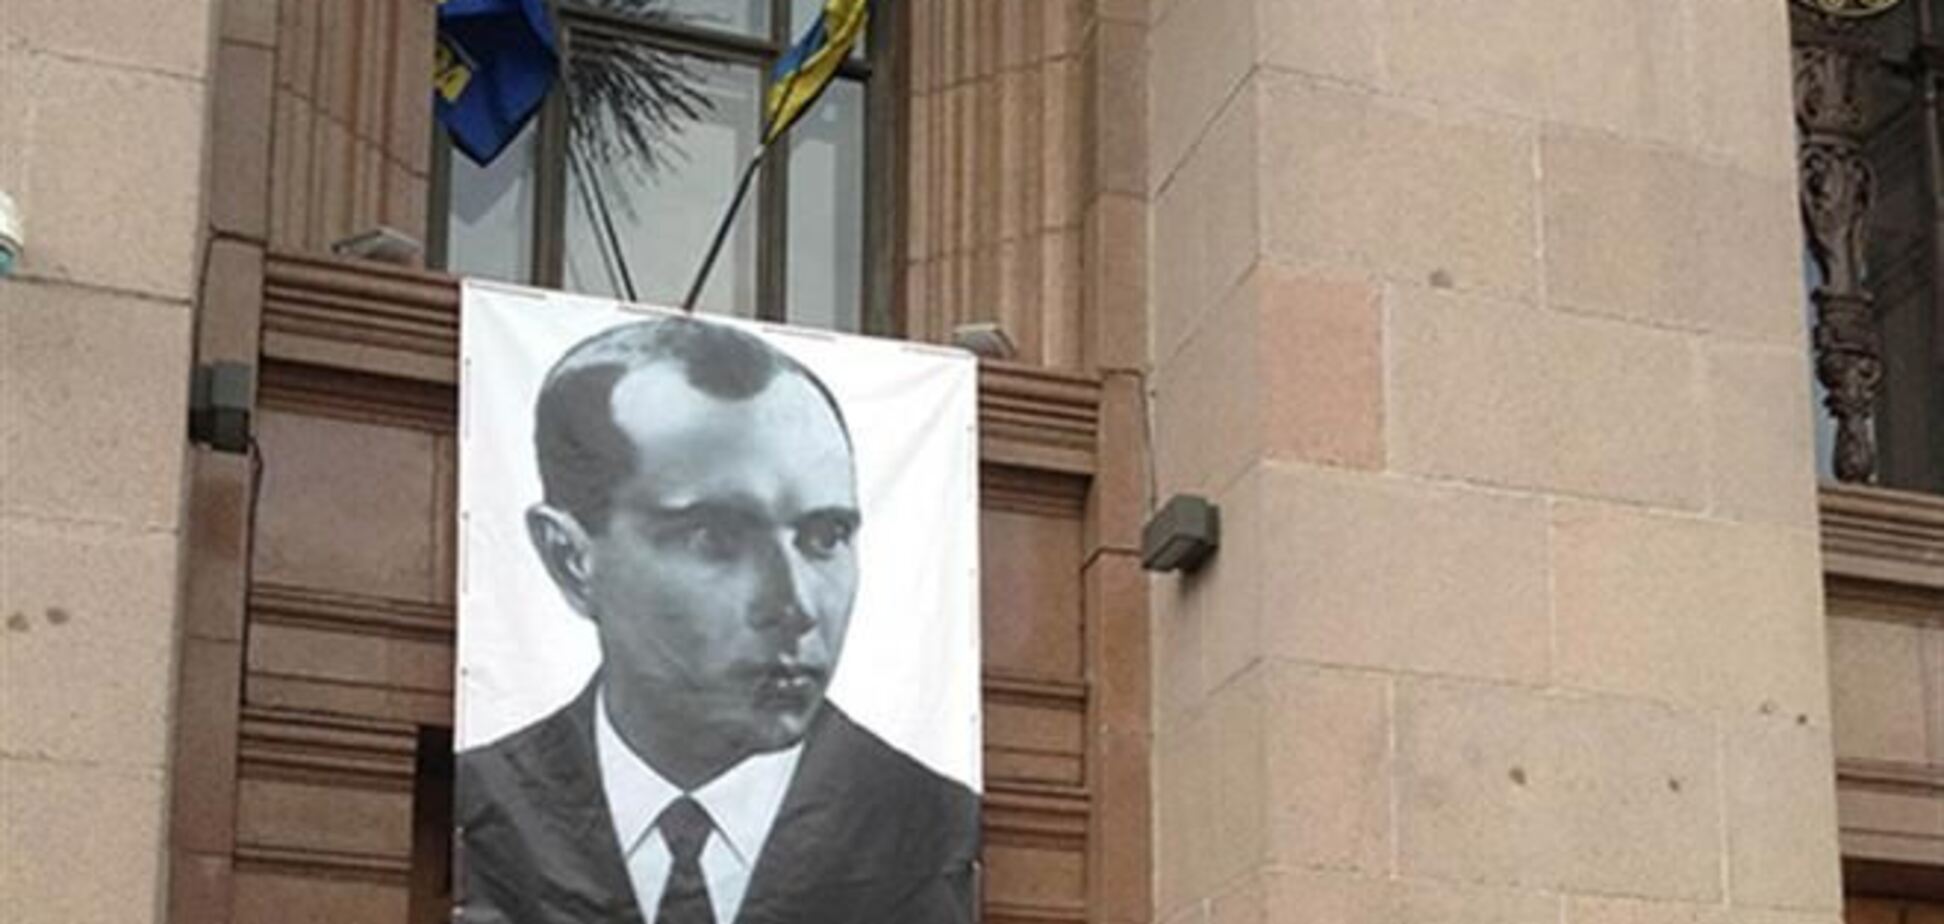 Над входом в КГГА повесили портрет Бандеры